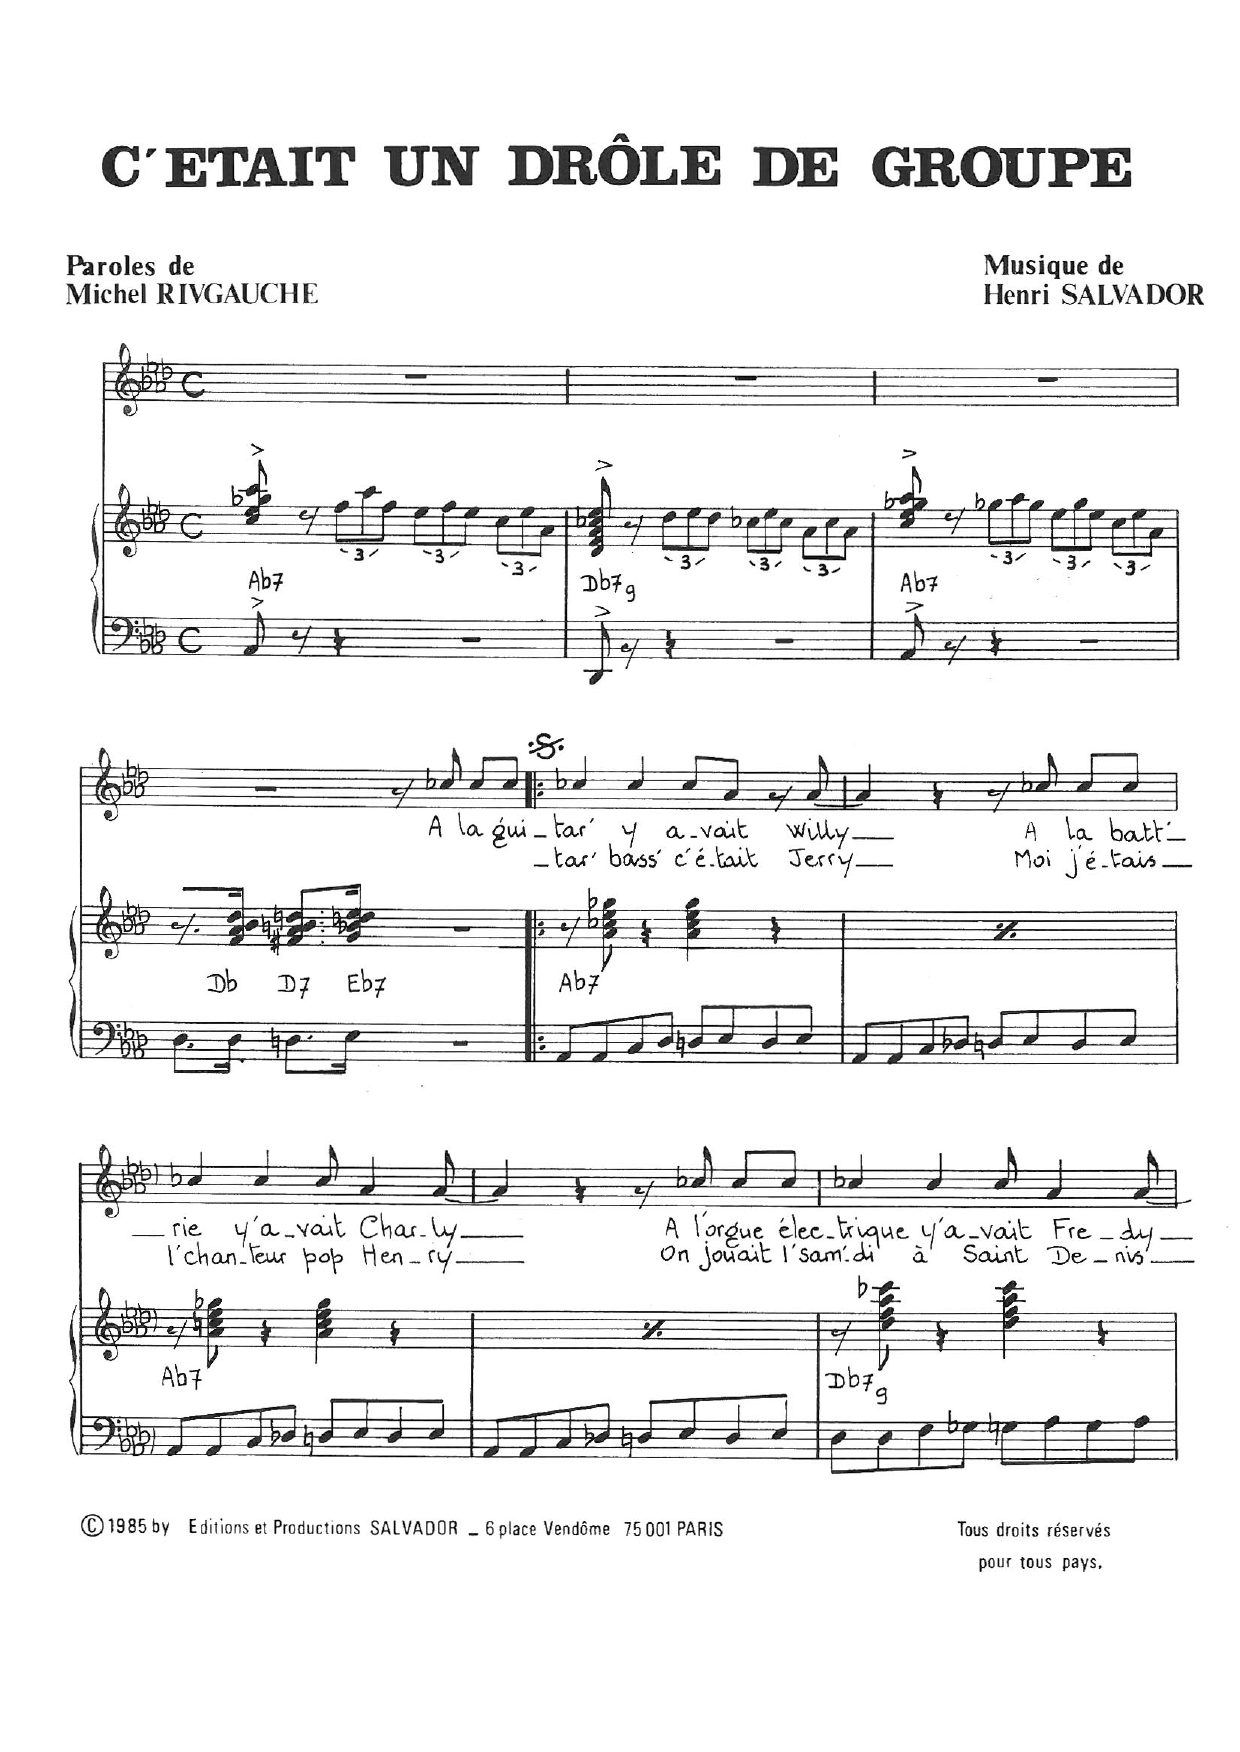 Henri Salvador C'etait Un Drole De Groupe Sheet Music Notes & Chords for Piano & Vocal - Download or Print PDF